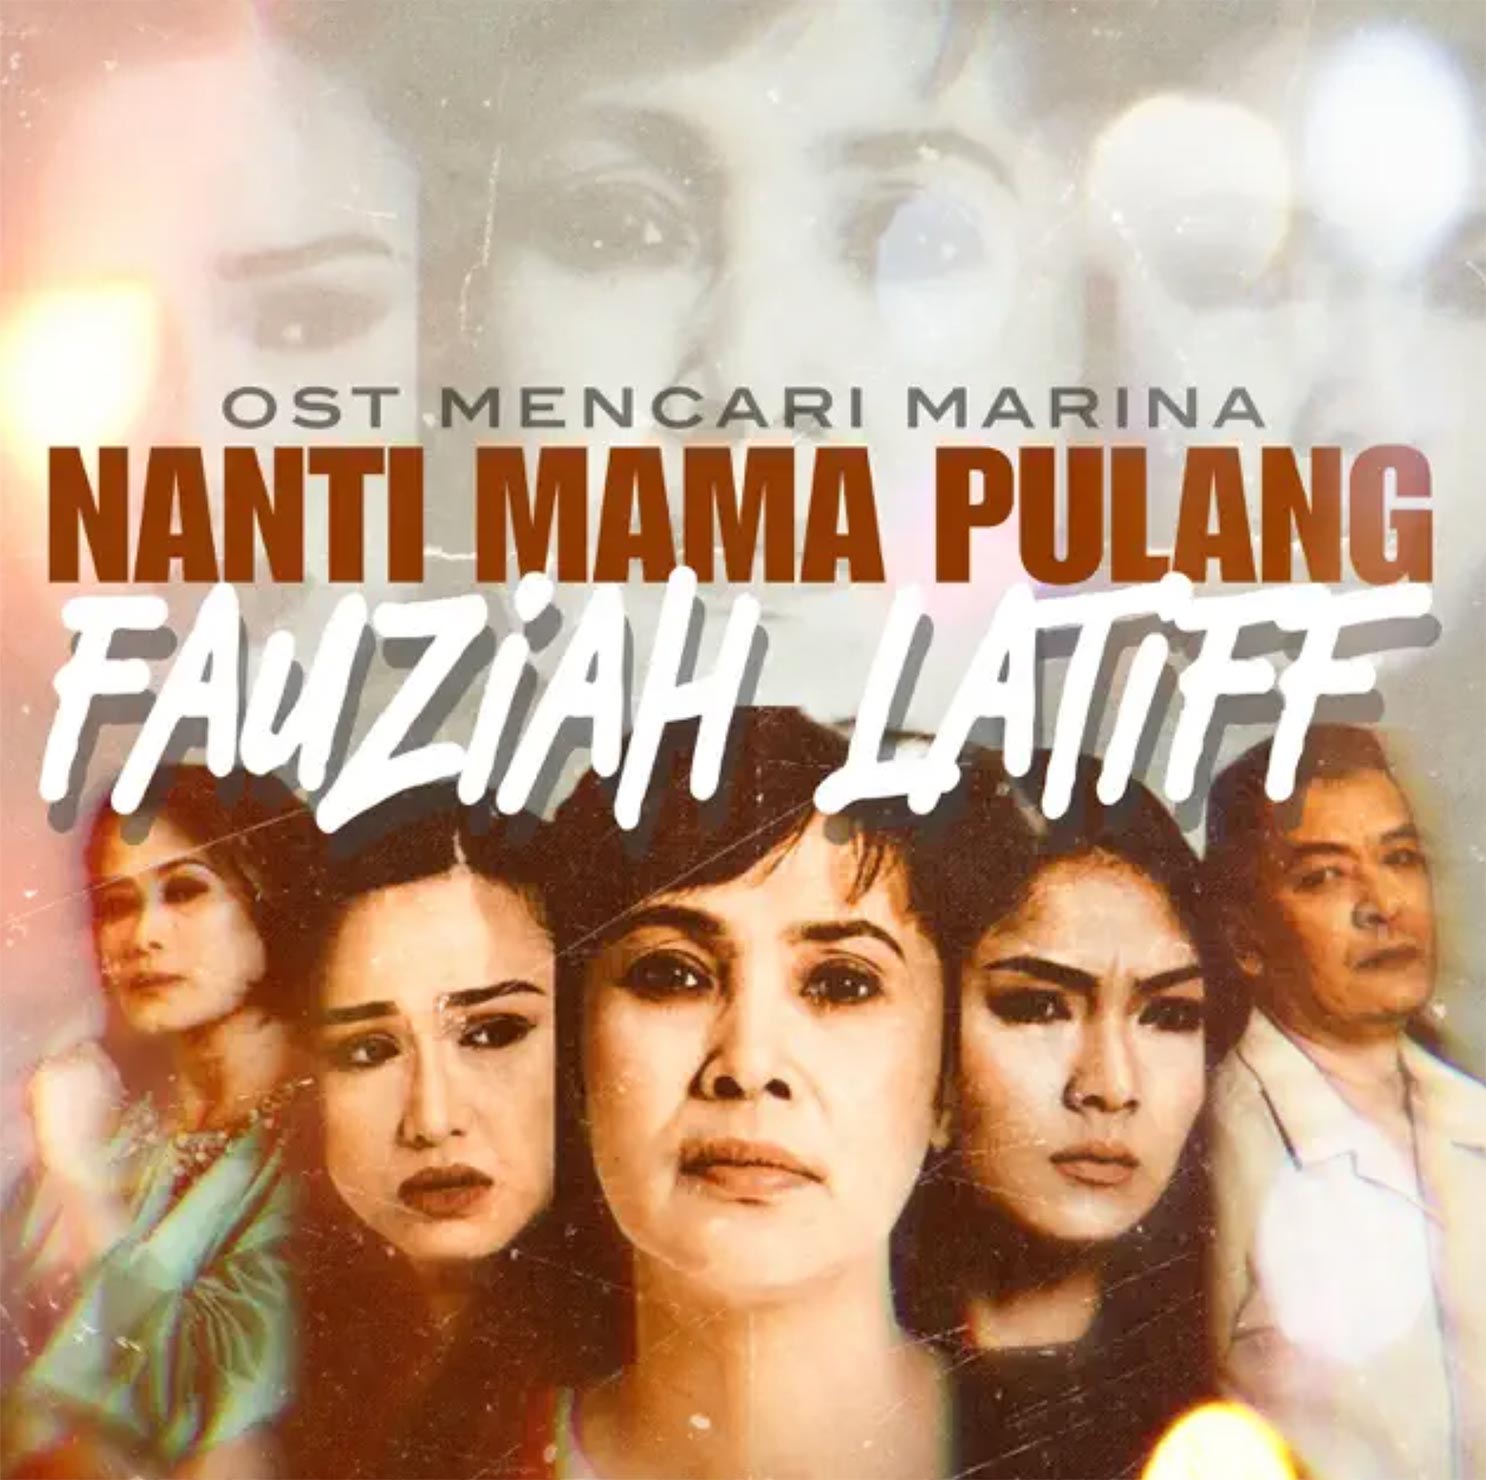 Lirik Lagu Fauziah Latiff - Nanti Mama Pulang (OST Mencari Marina Mediacorp Suria)